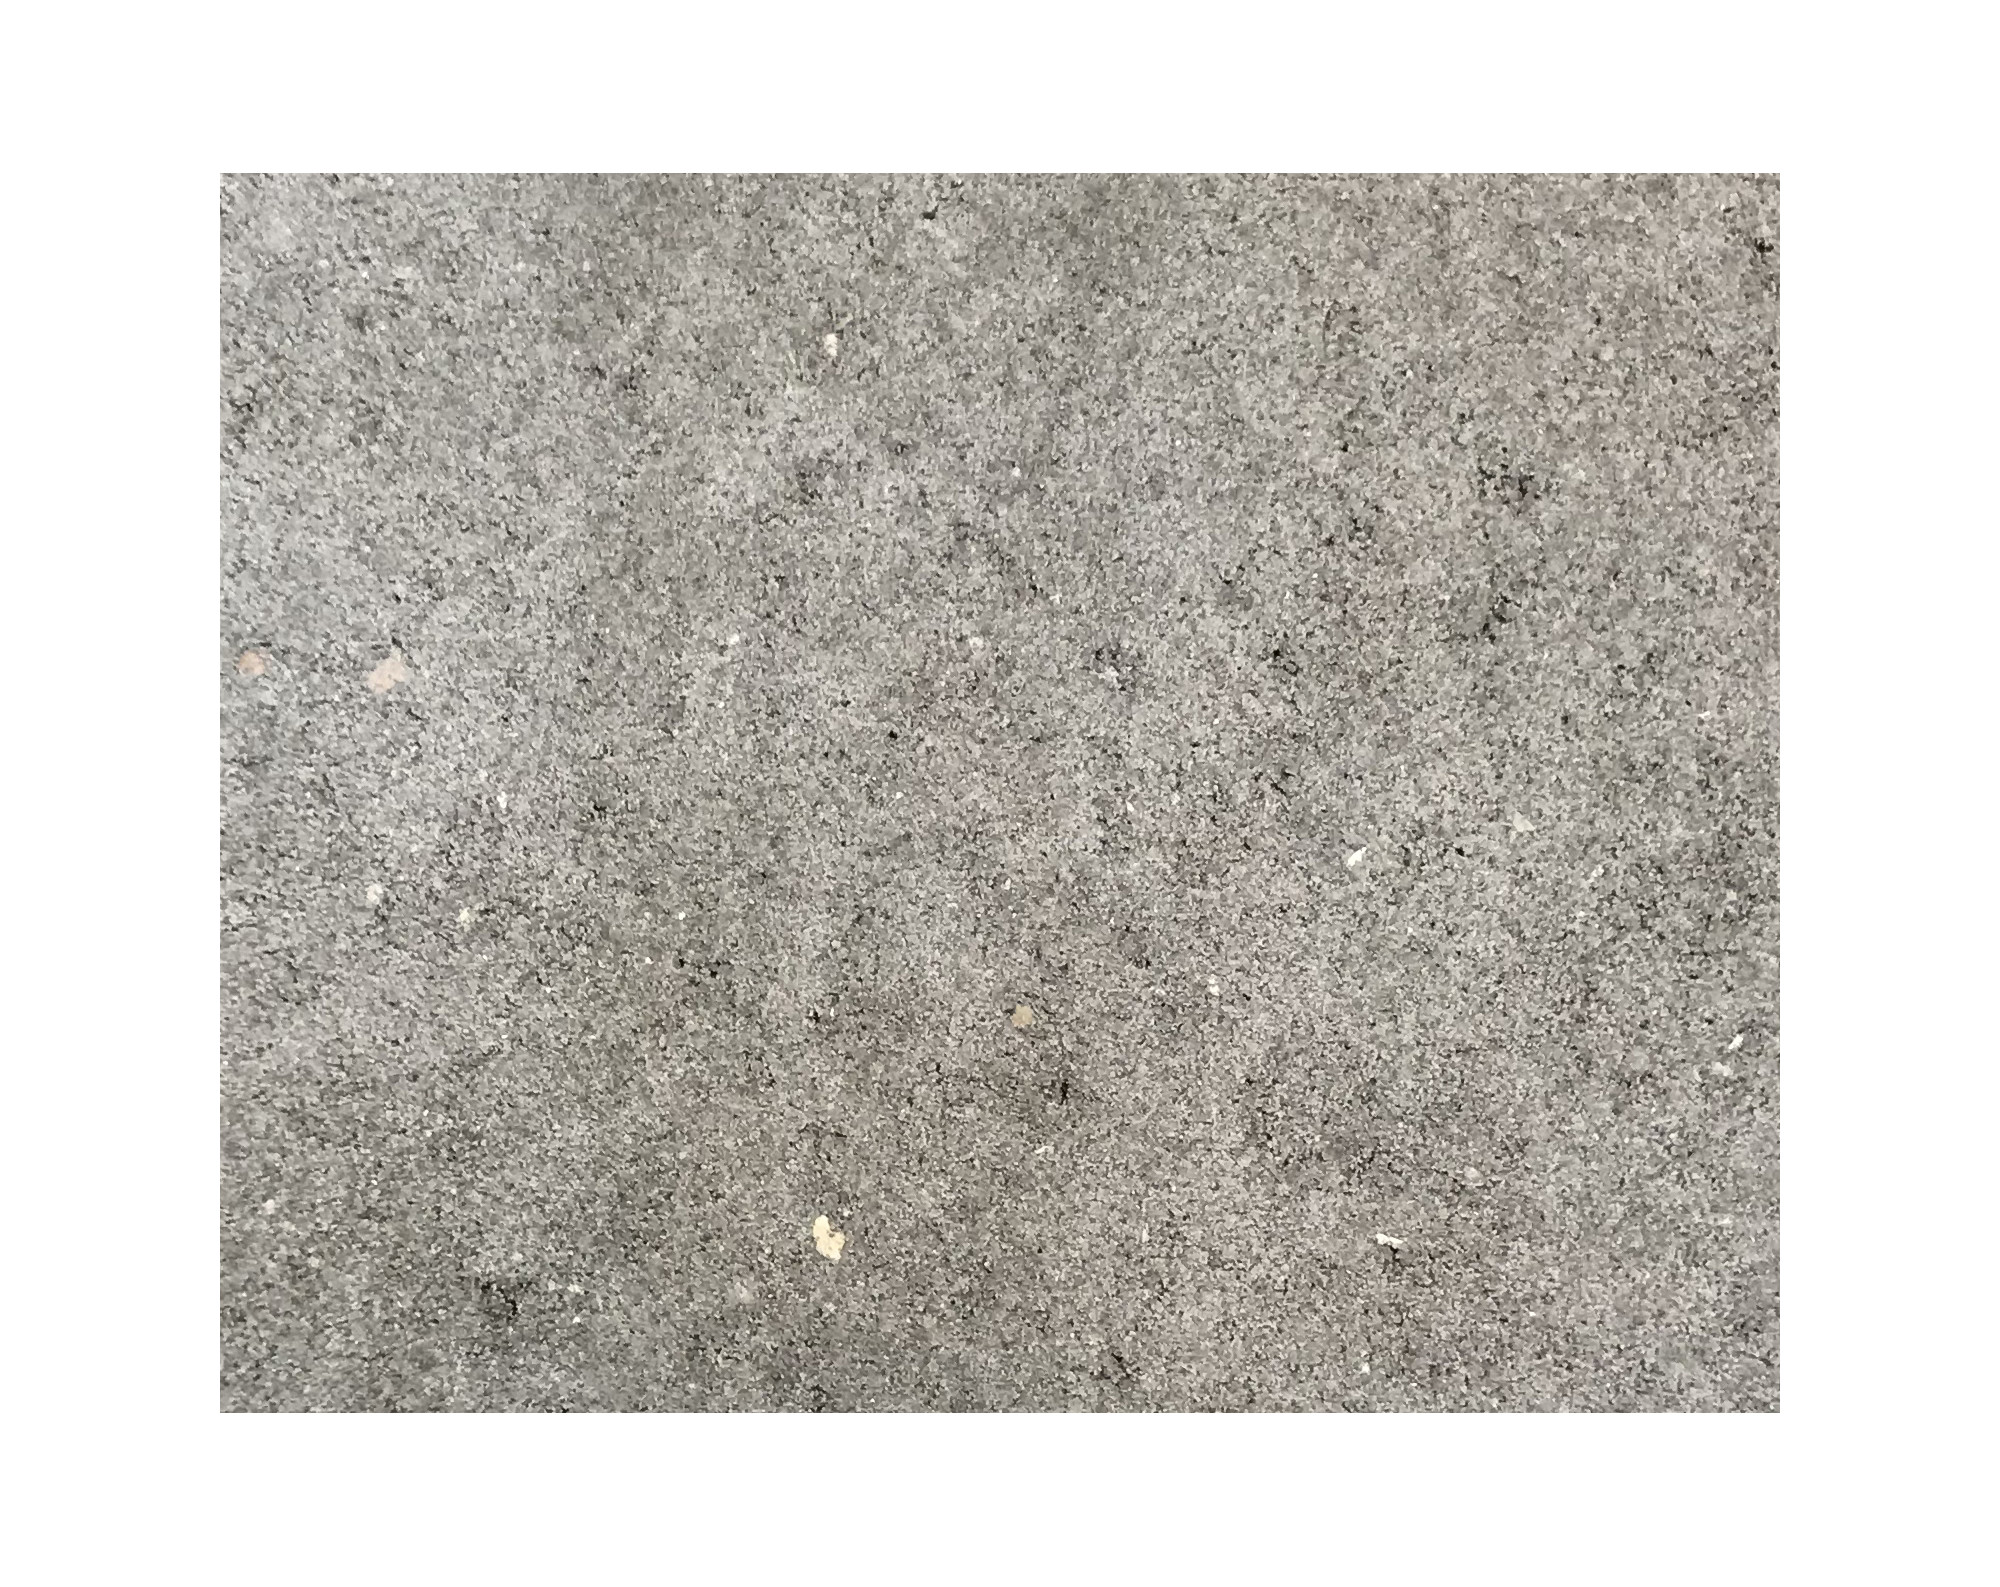 Harmo roc athenset, rustica-serie, ovaal d: 4,20mx9,50m, grijs, beton